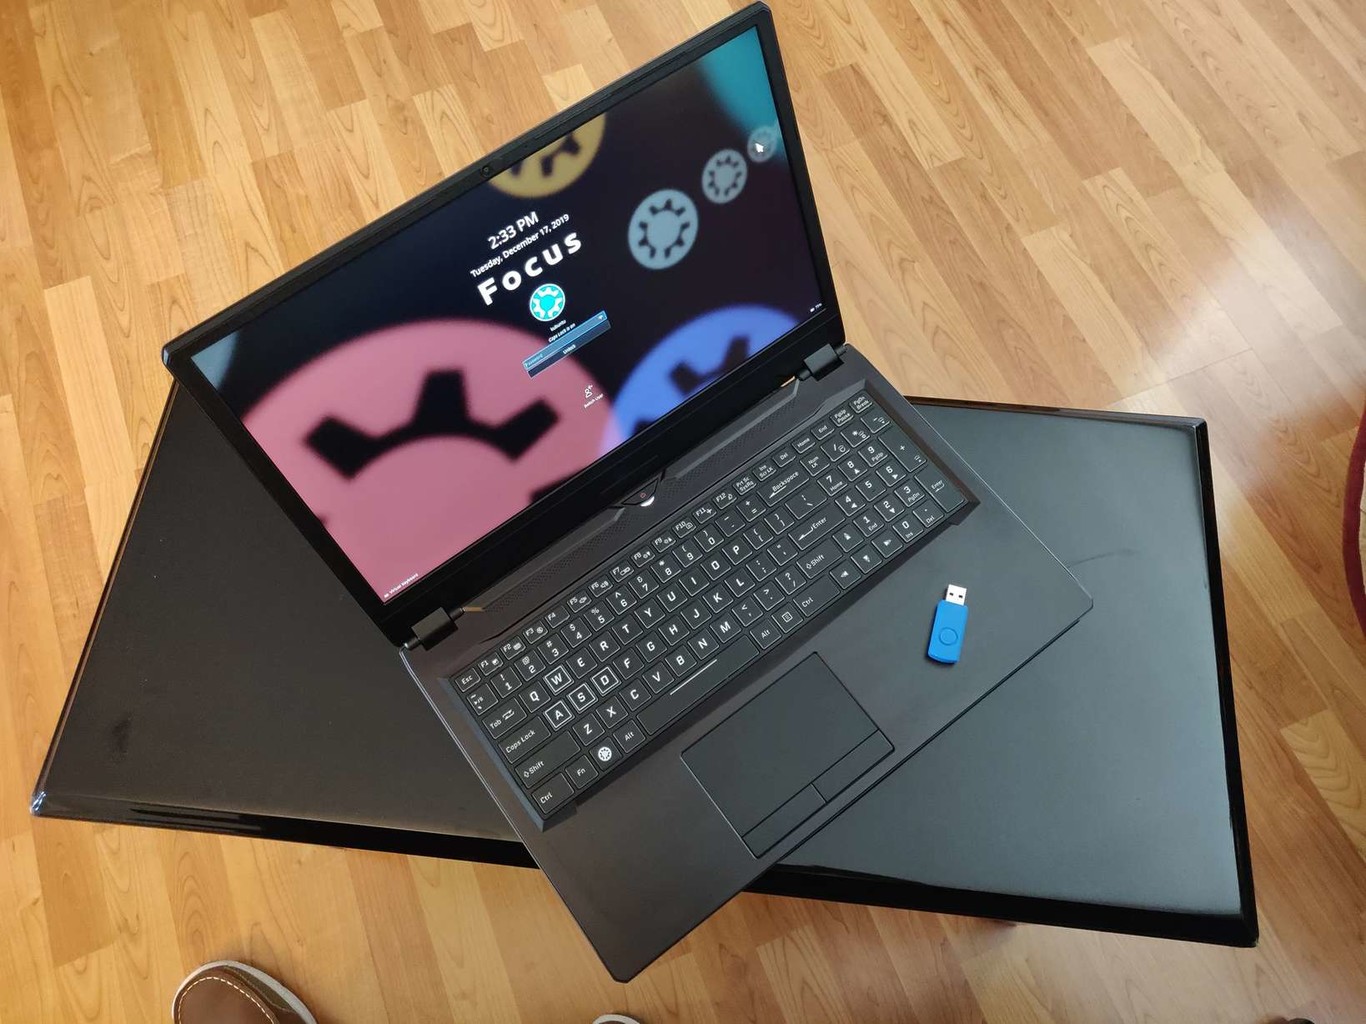 Kubuntu ya tiene su propio ordenador portátil oficial diseñado especialmente para desarrolladores y power users